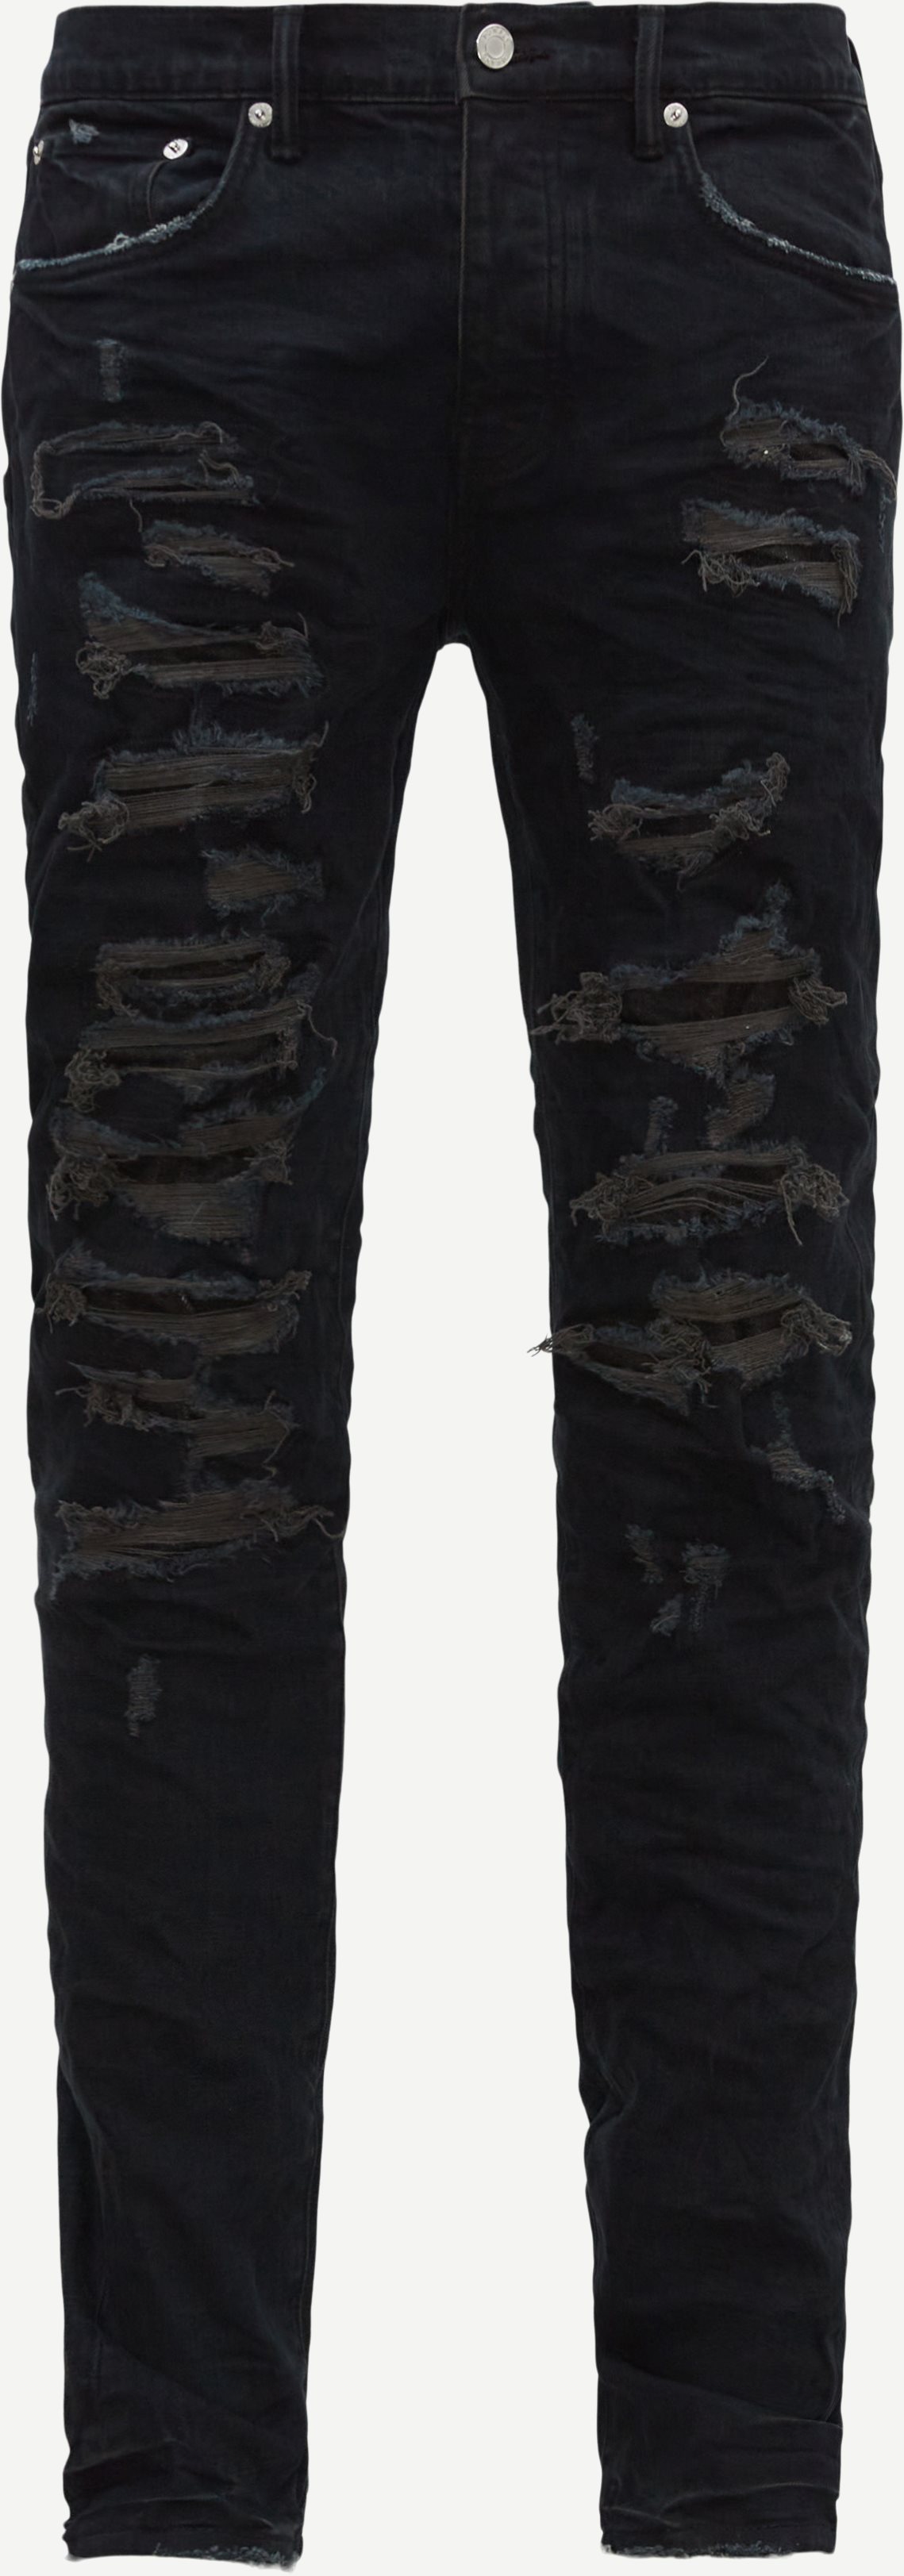 PURPLE Jeans P001-BLDR123 Black